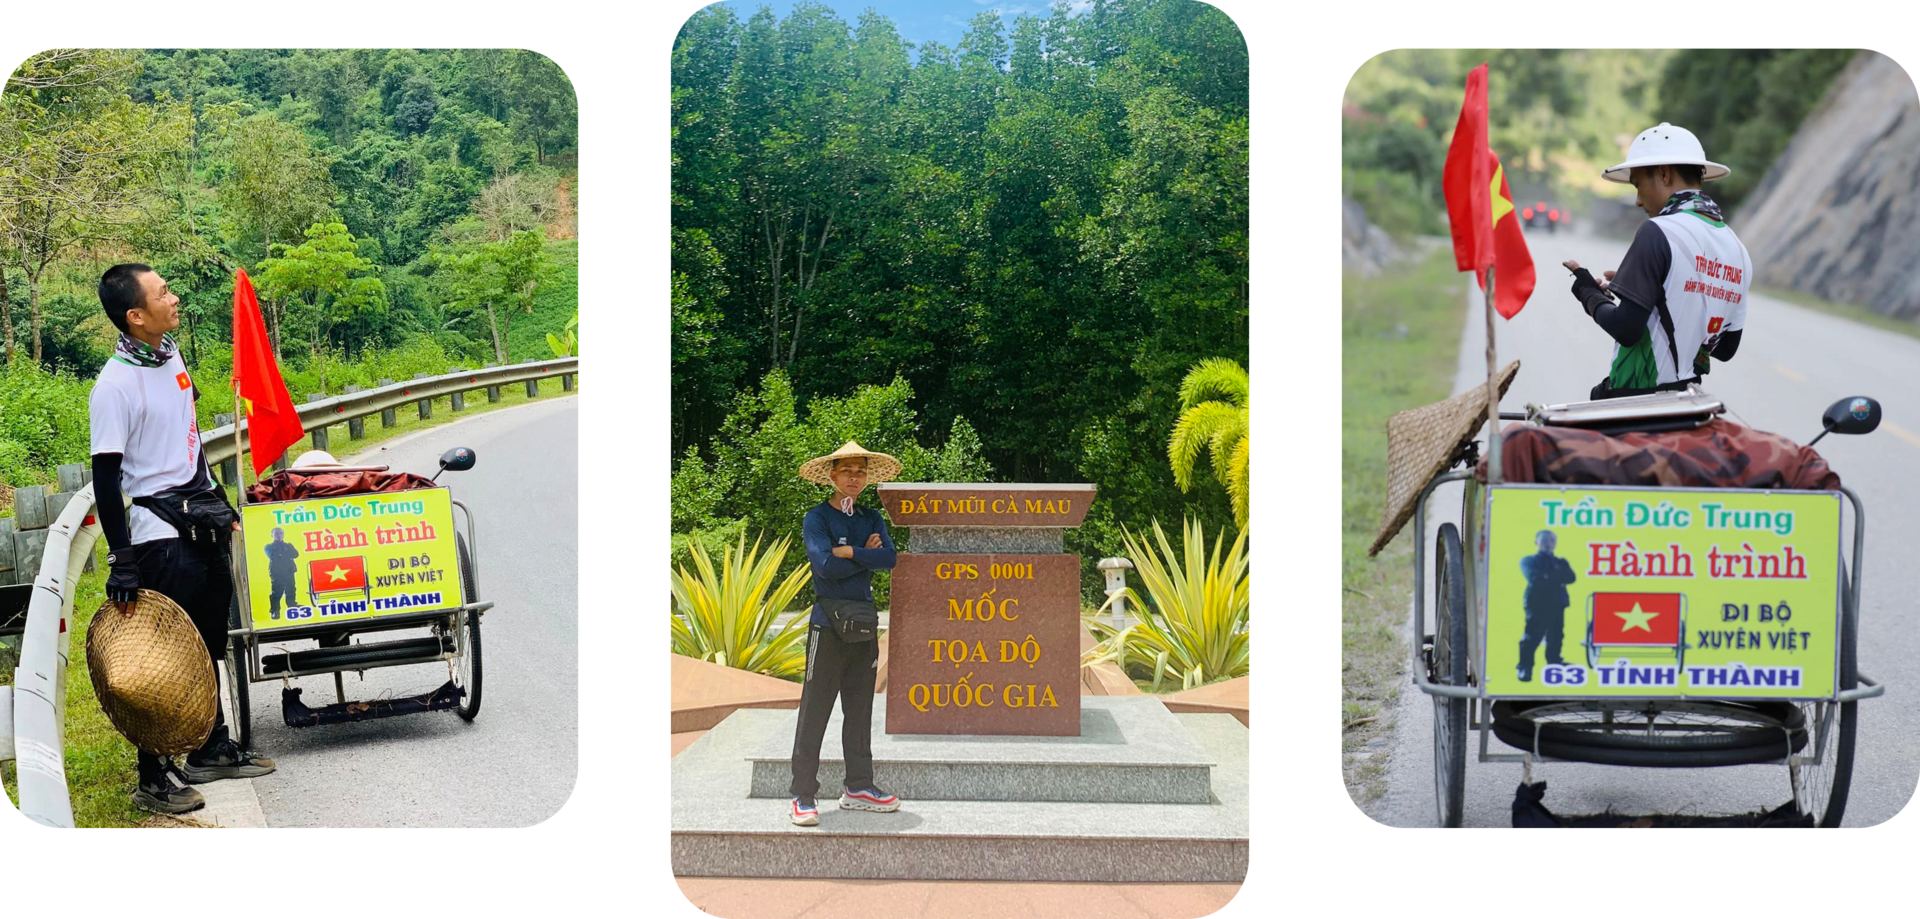 Hành trình 2 năm đi bộ hút đinh xuyên Việt của chàng trai xứ Nghệ - 3